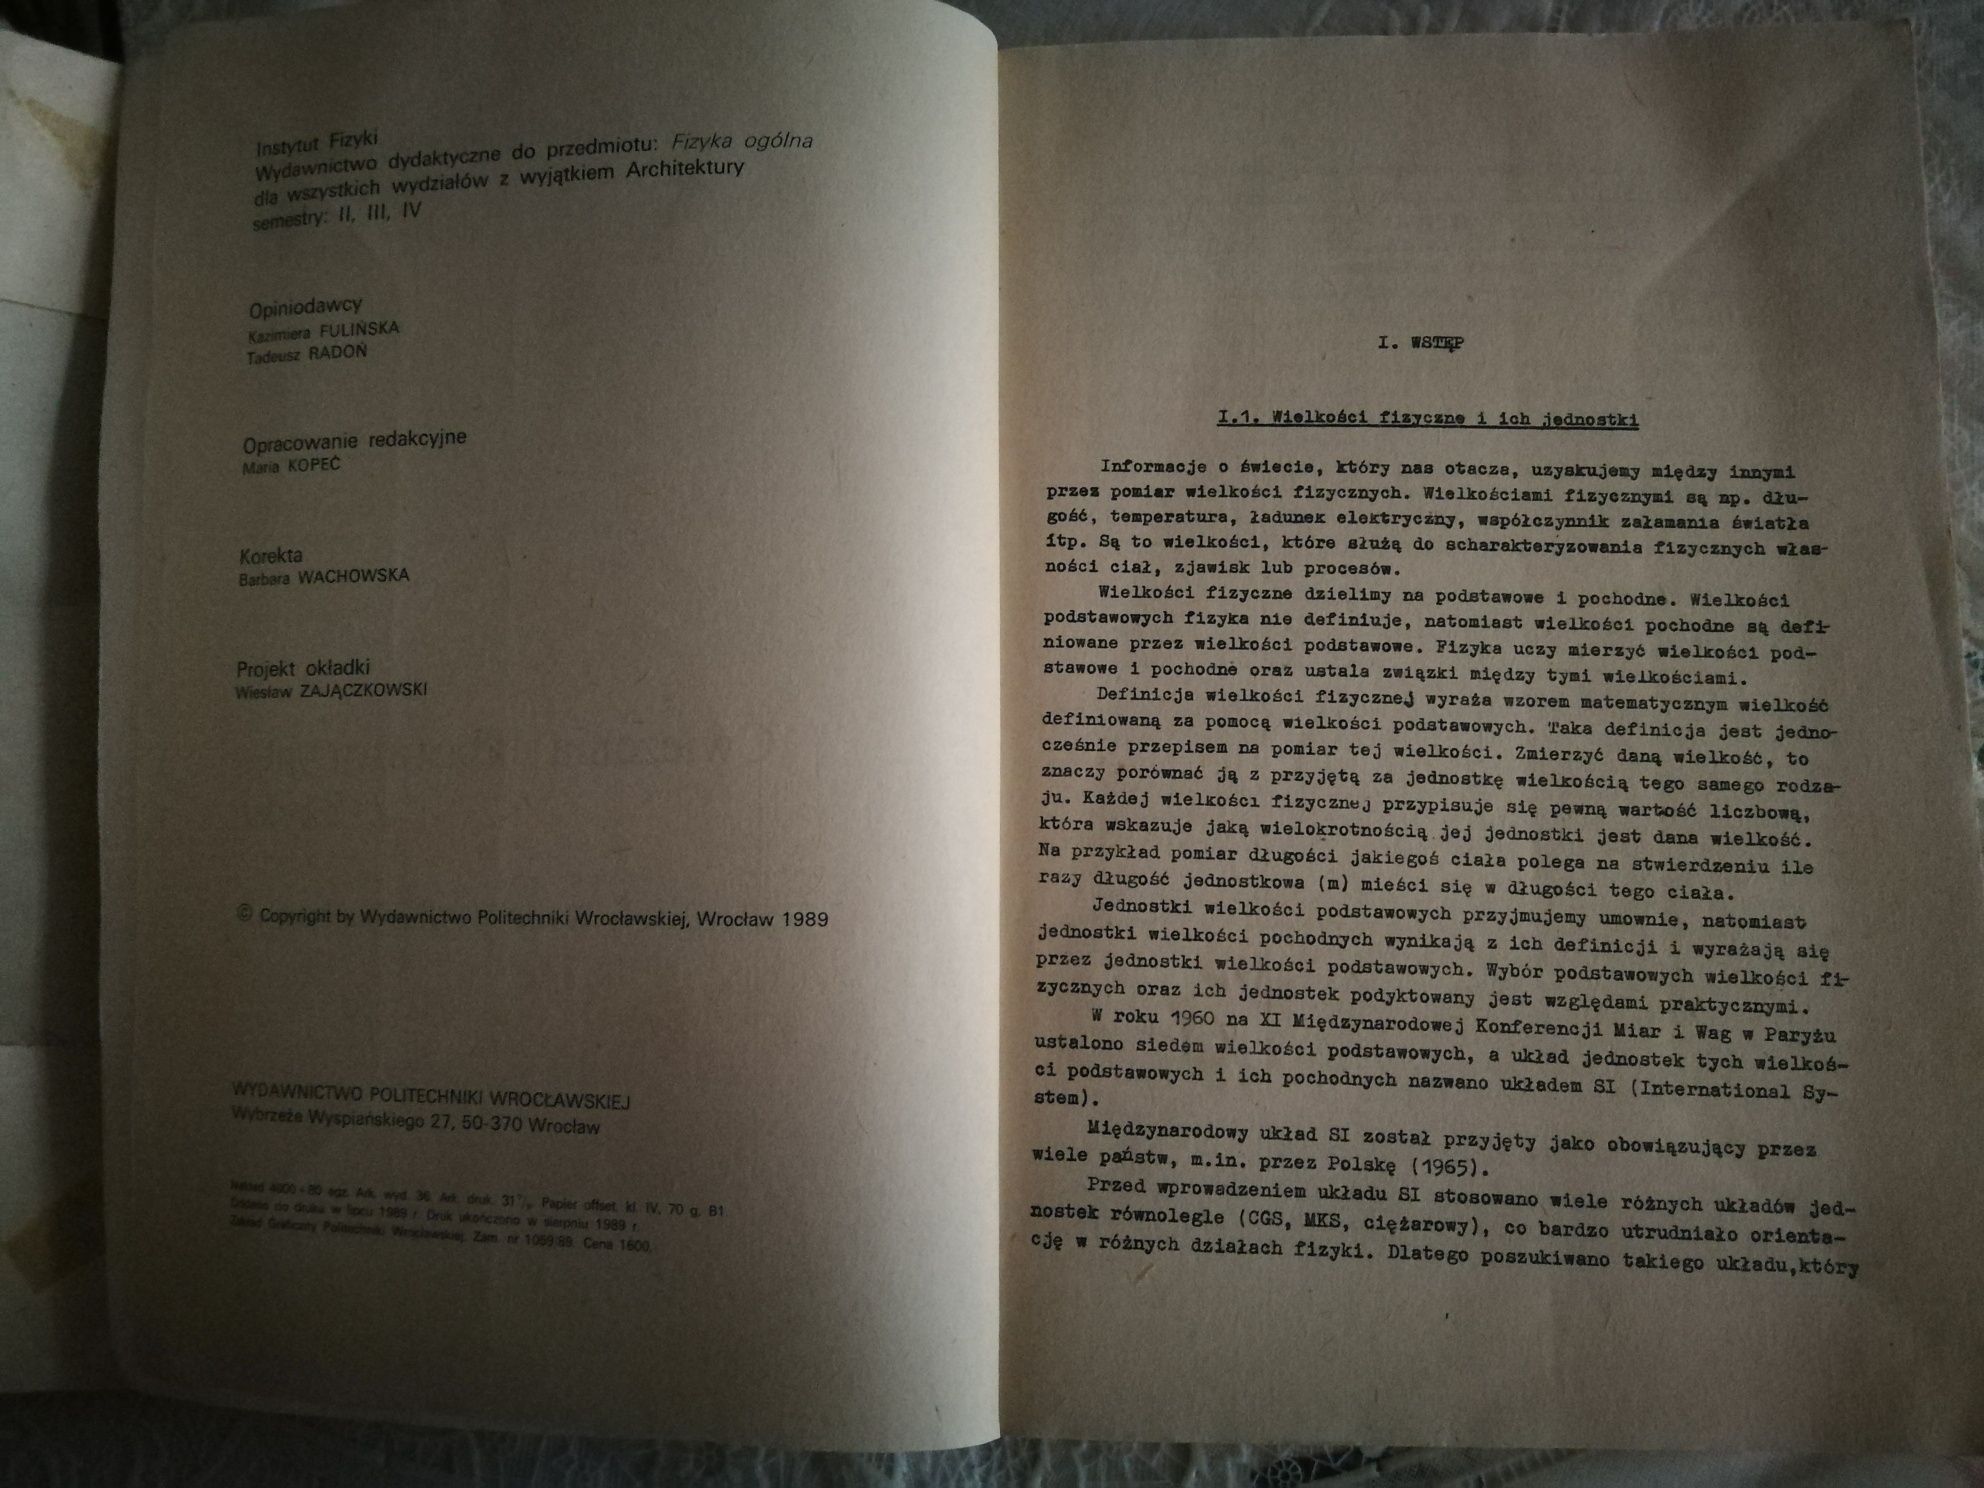 Ćwiczenia laboratoryjne z fizyki, R. Żuczkowski, skrypt PW, 1989